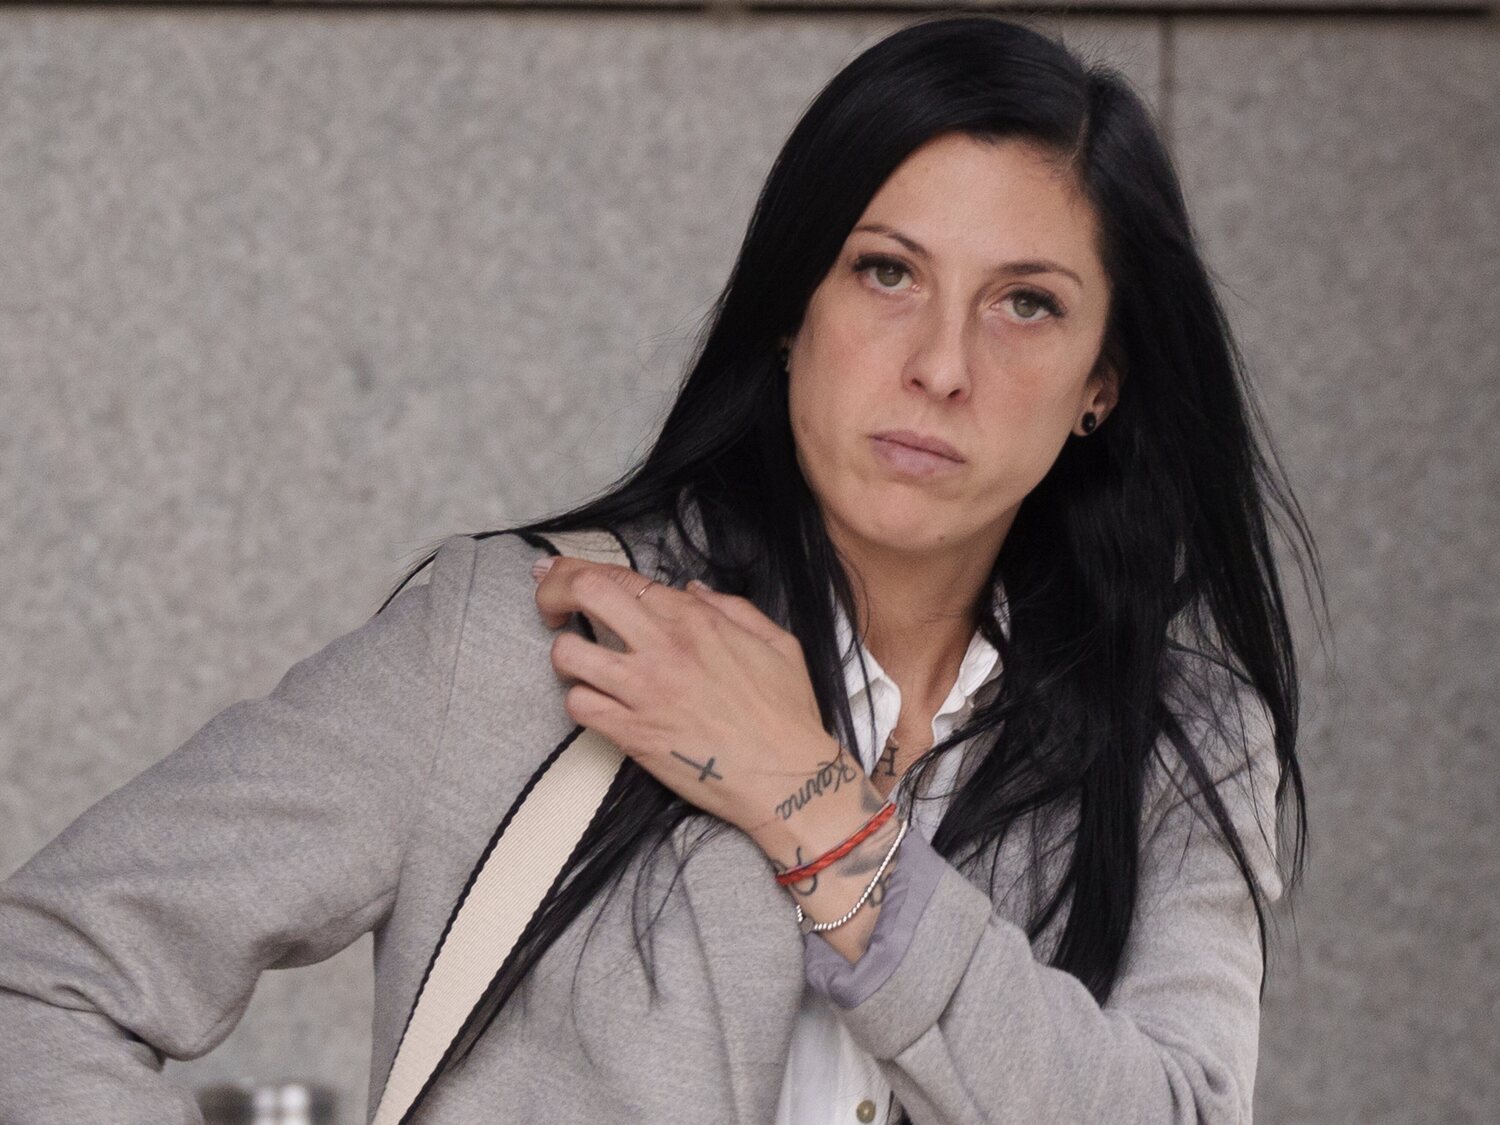 Jenni Hermoso declara ante el juez que el beso de Rubiales fue "no consentido" y denuncia el "atosigamiento" de su equipo